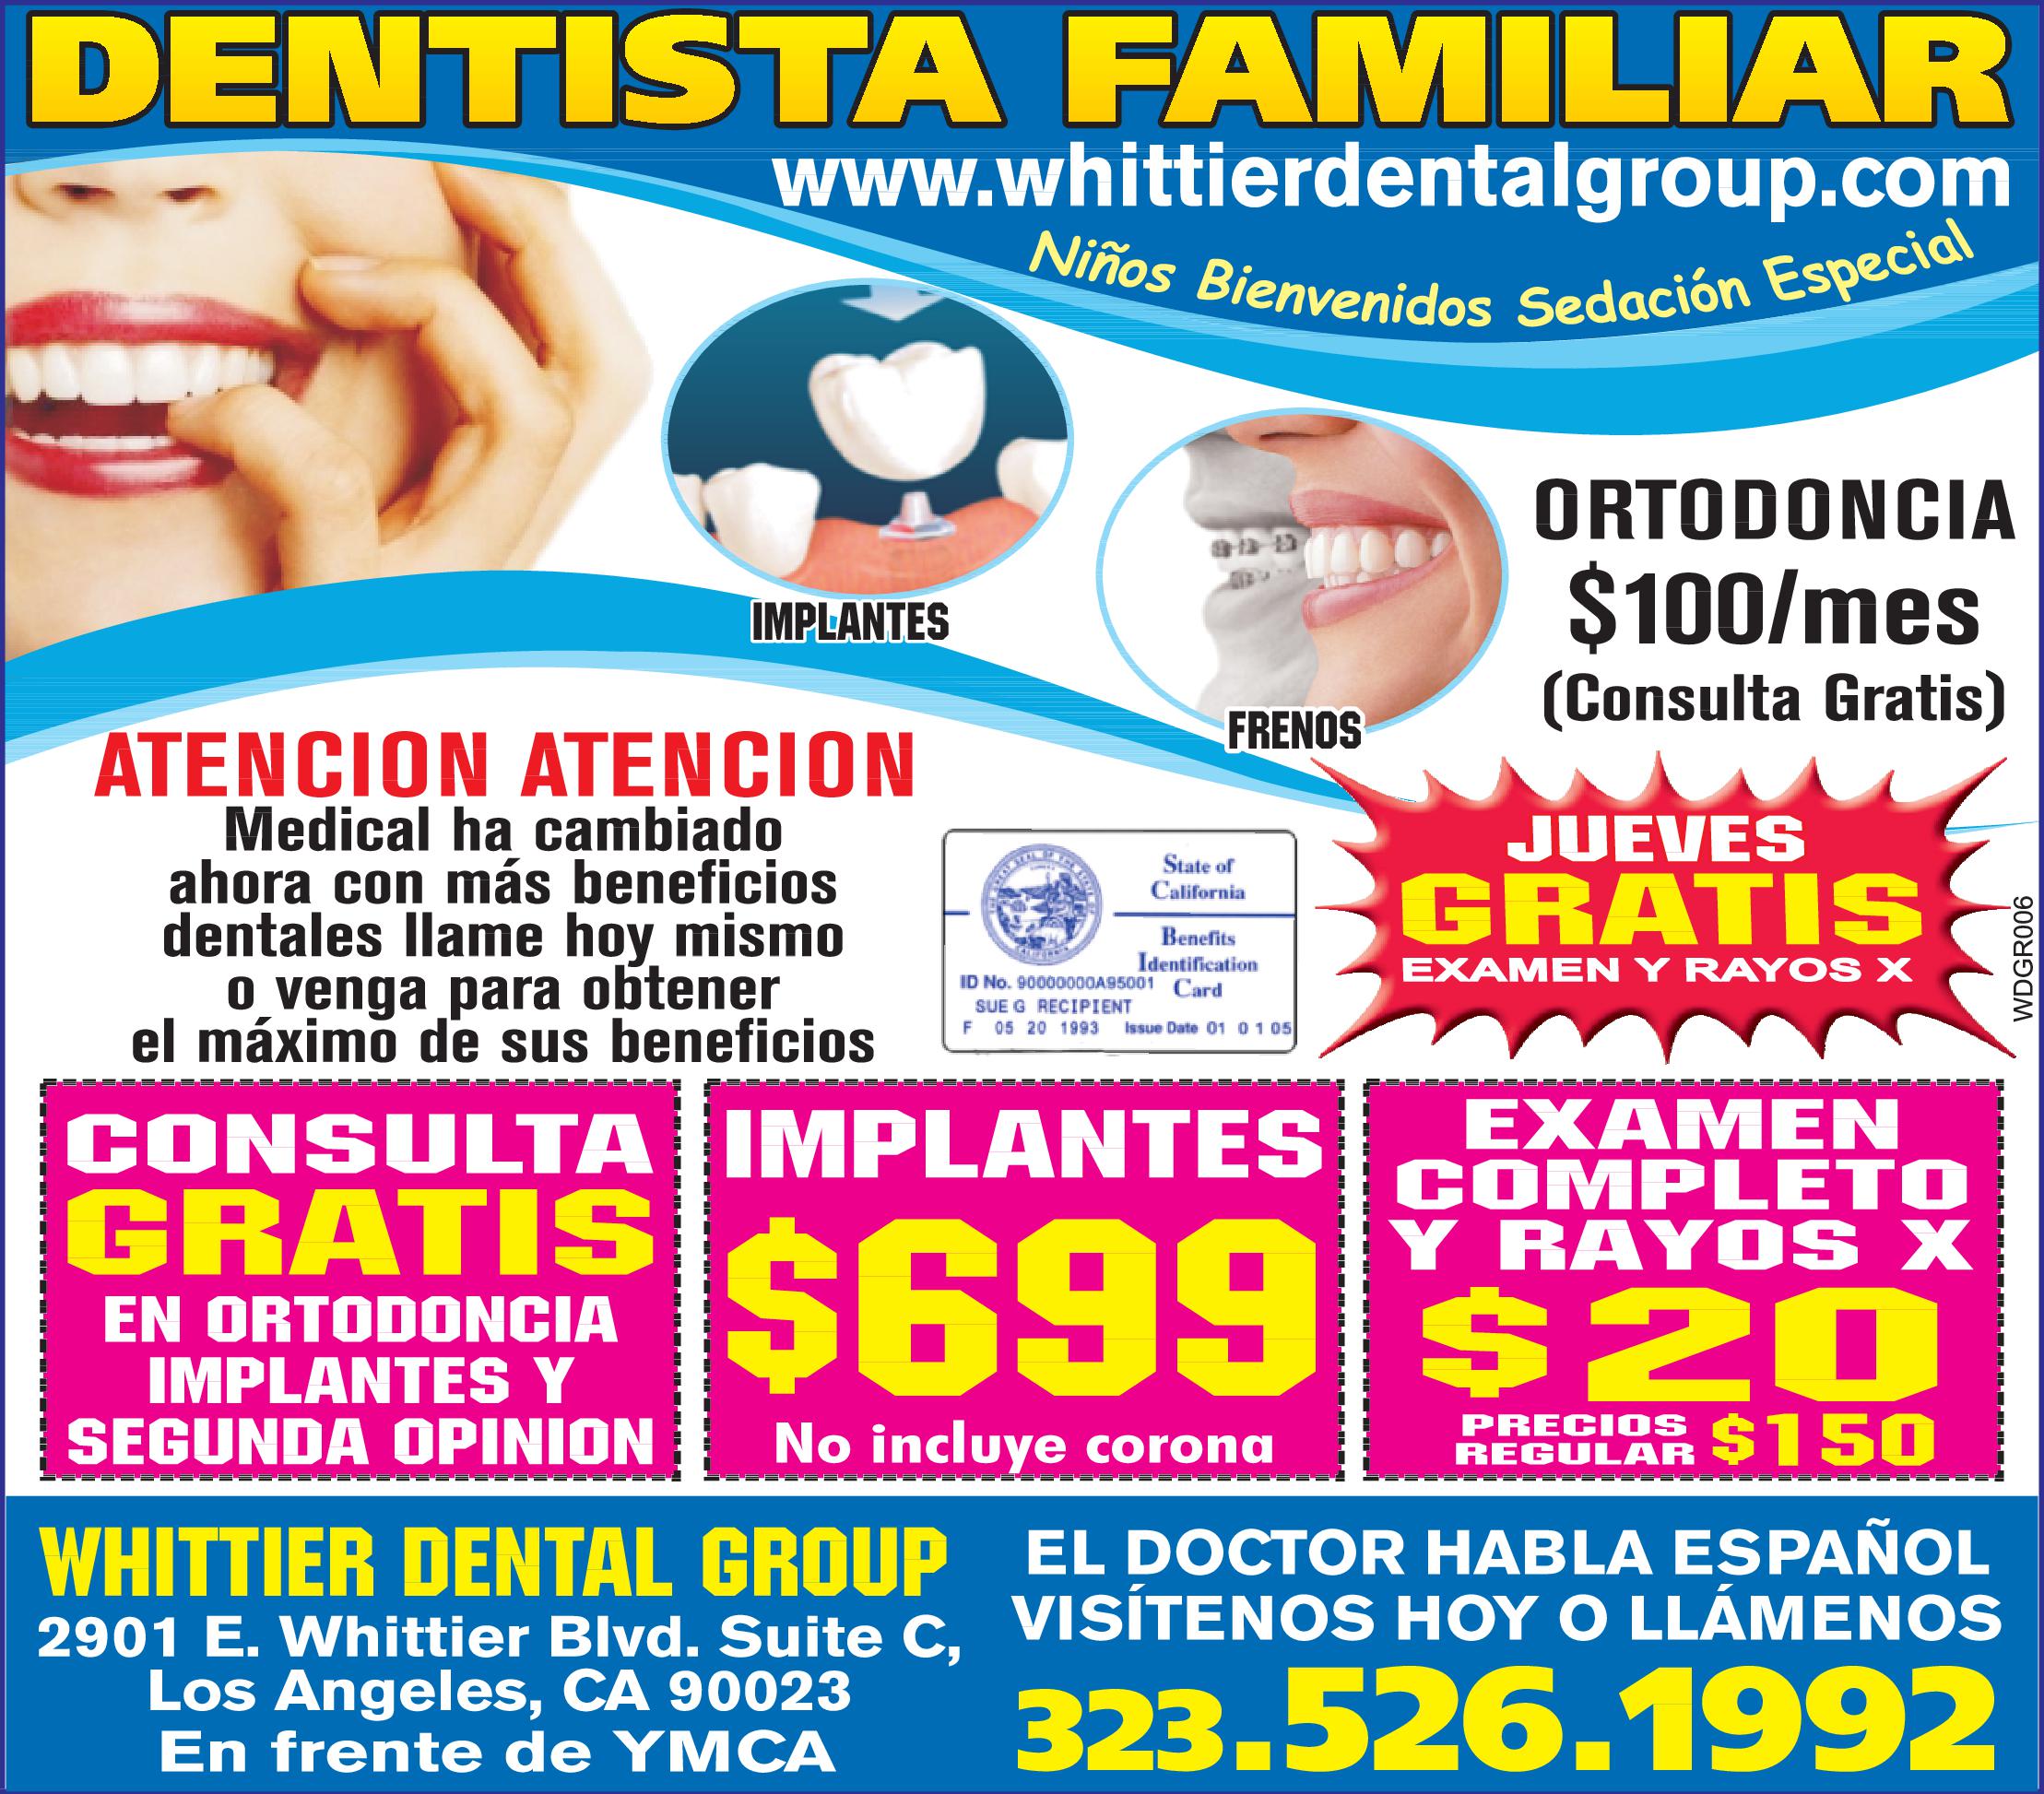 Whittier Dental Group